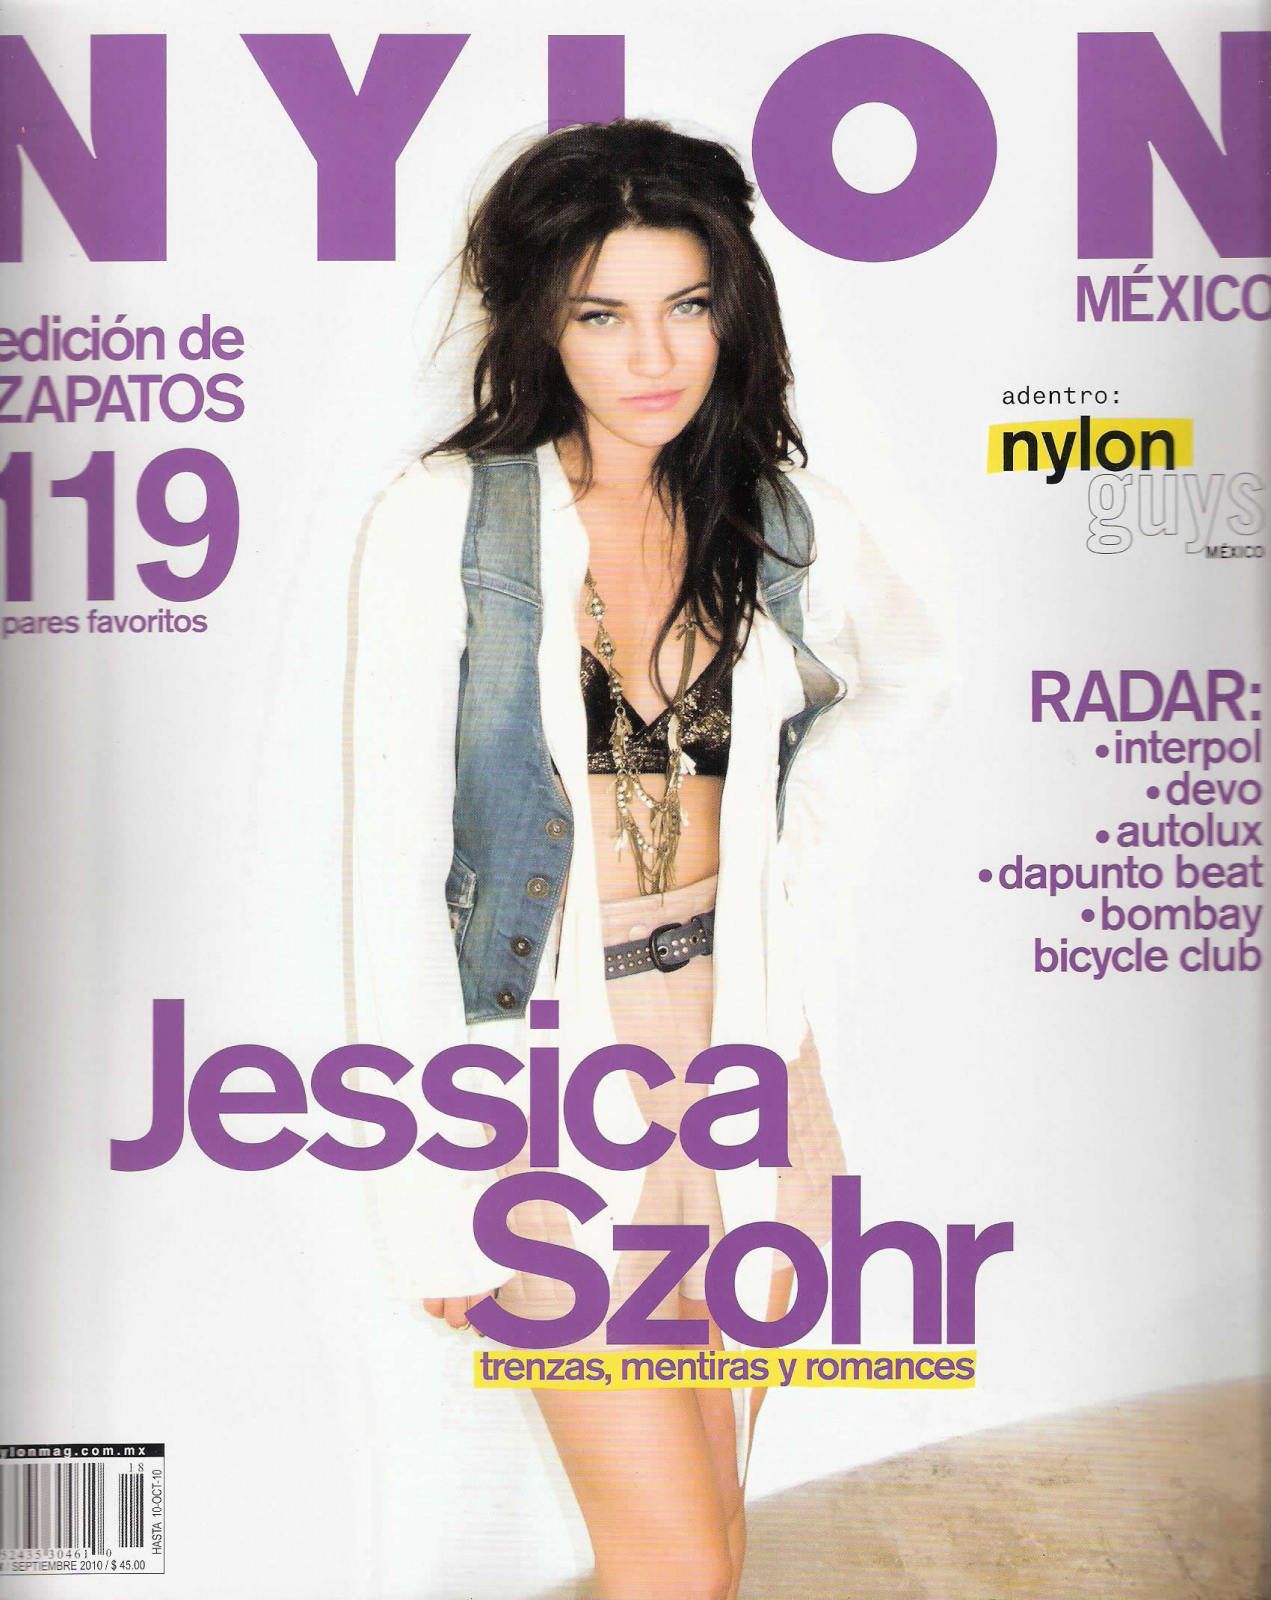 Джессика Зор на обложках журналов